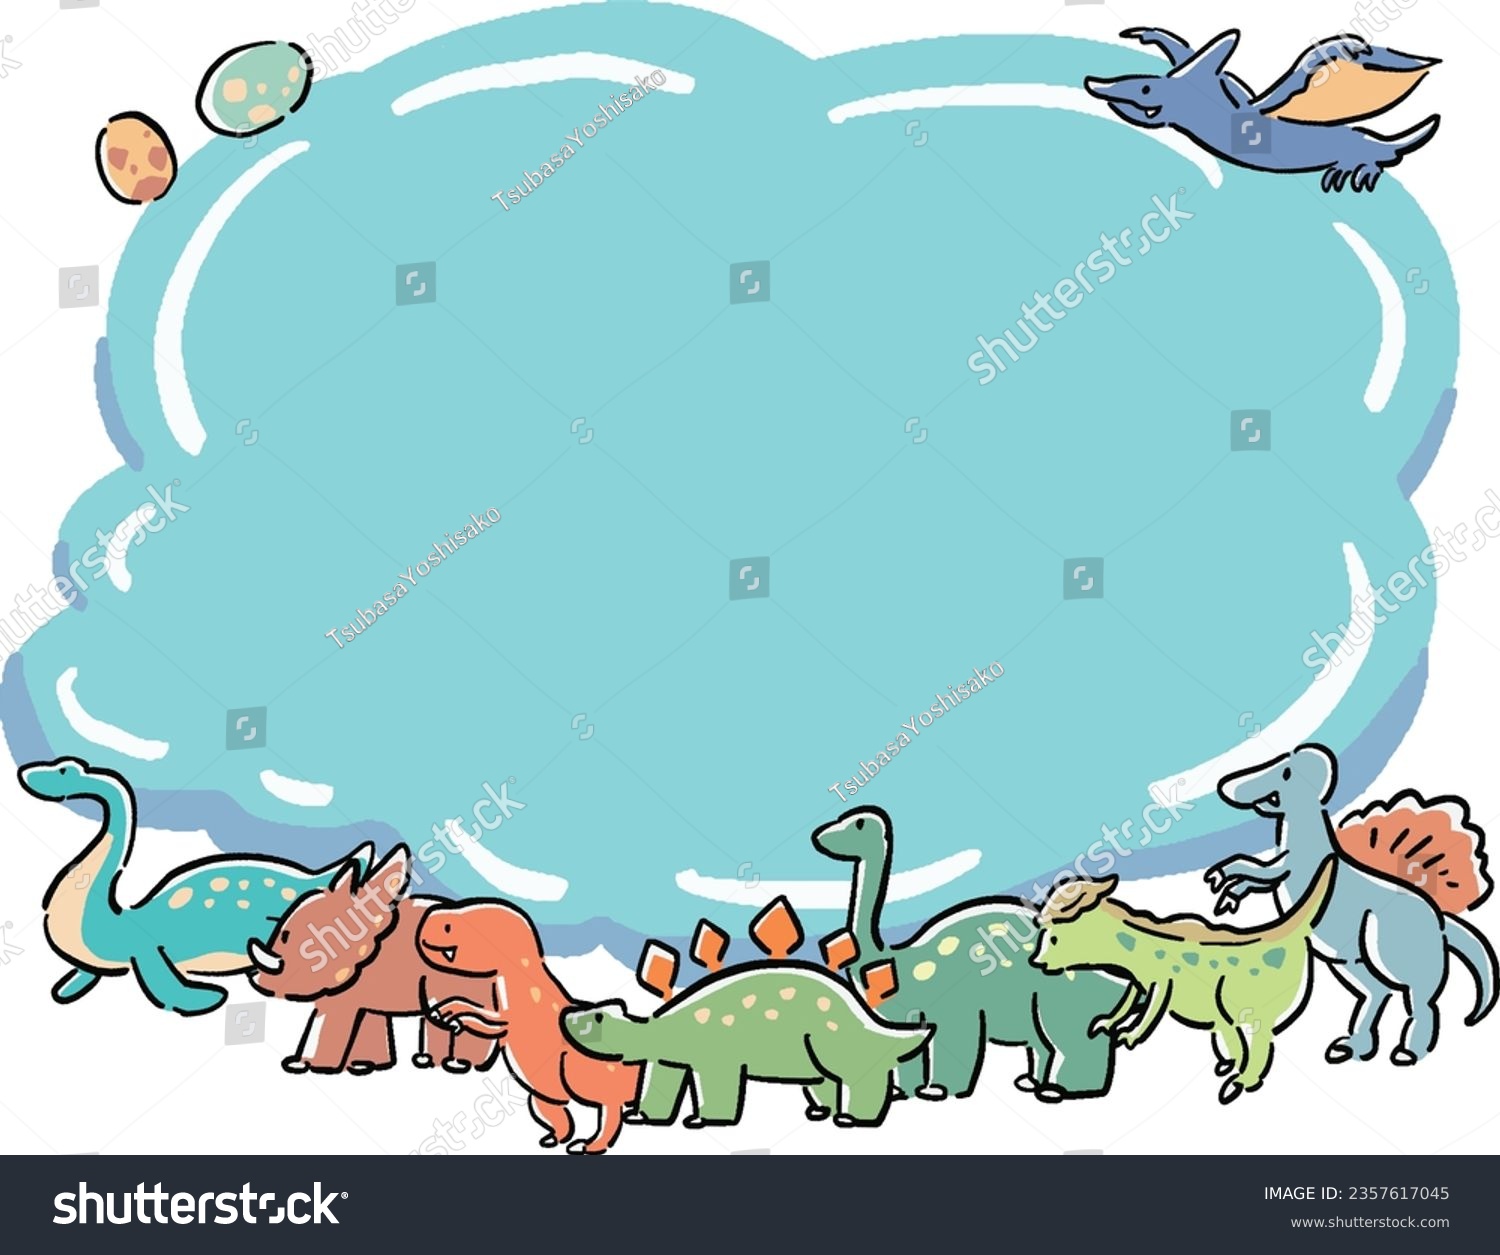 SVG of Hand-drawn wind cloud shape frame illustration of dinosaurs svg